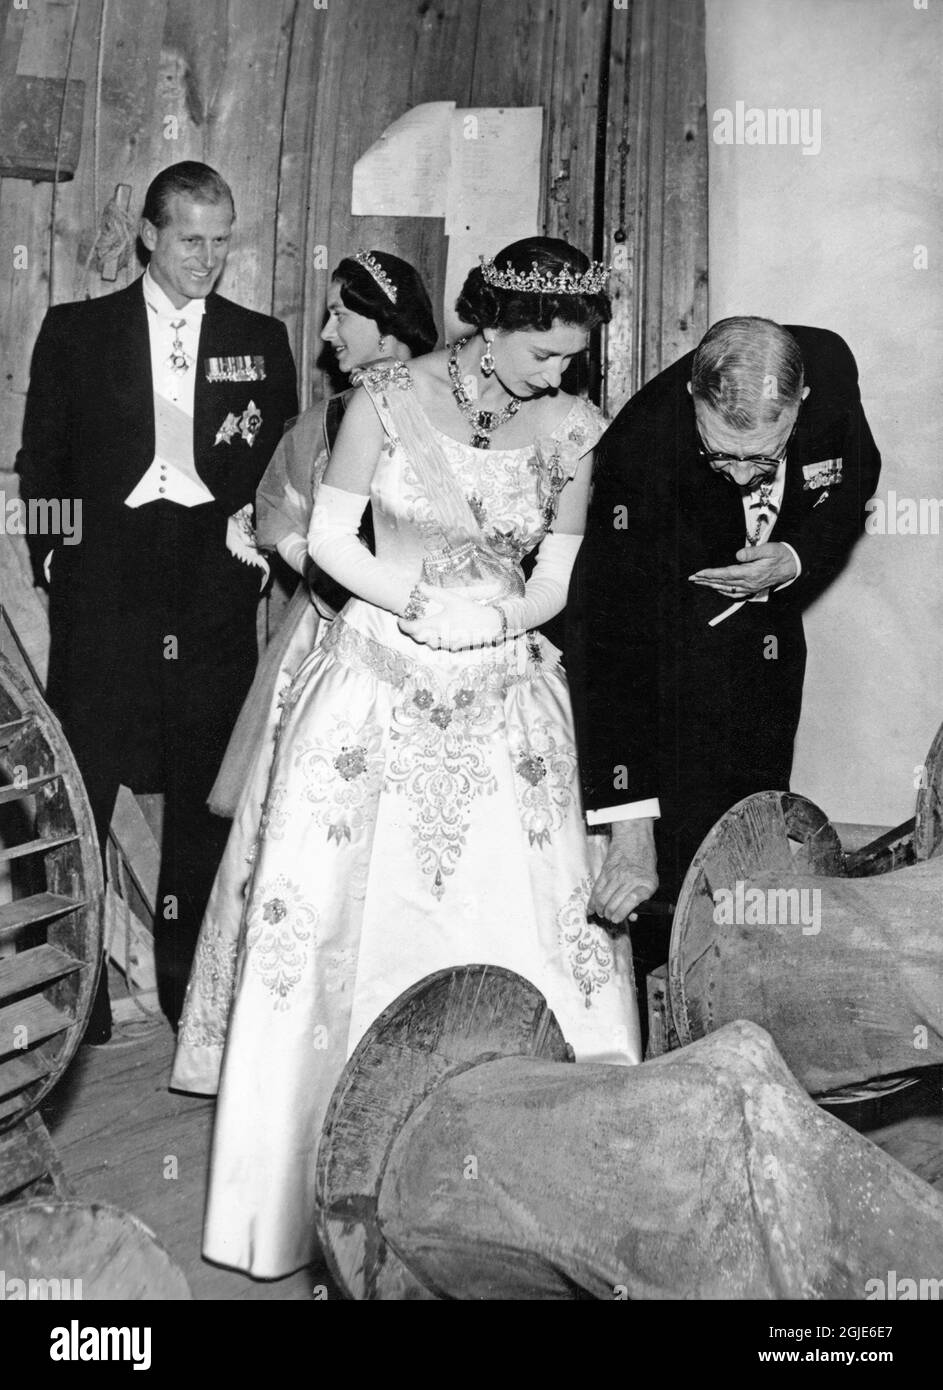 Le prince Philip, la princesse Margaret, la reine Elizabeth II et le roi Gustaf VI Adolf de Suède au théâtre du palais de Drottningholm lors de la visite d'État de la reine en Suède le 14 juin 1956. Photo: Aftonbladet / TT code 2512 Banque D'Images